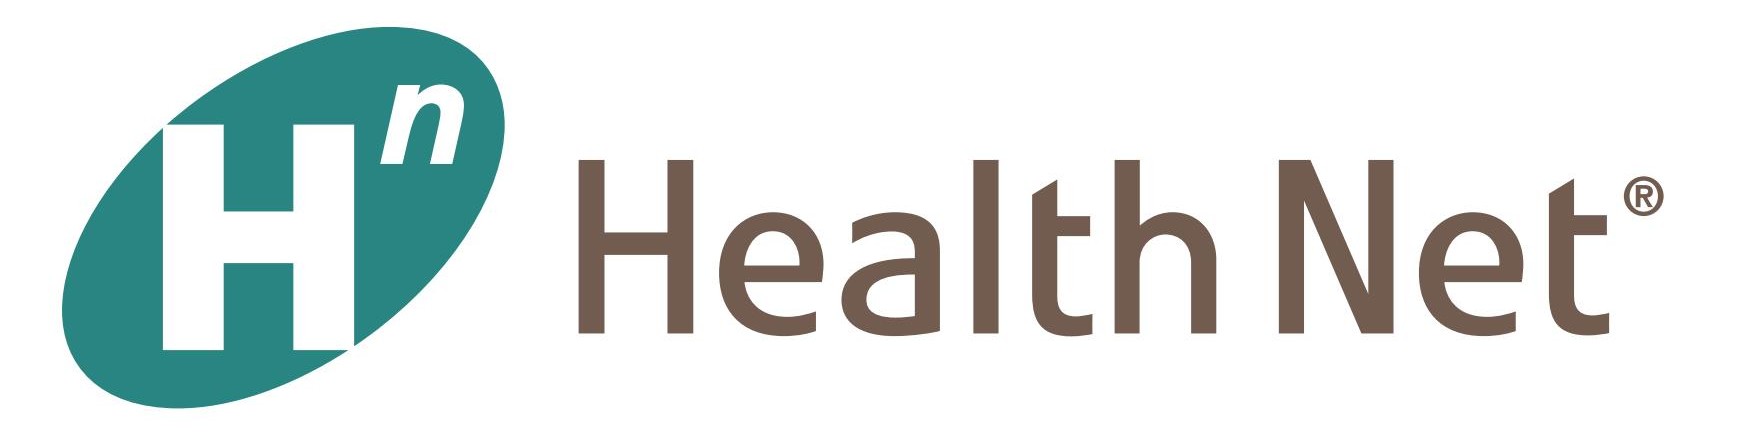 health-net-logo-1.jpg